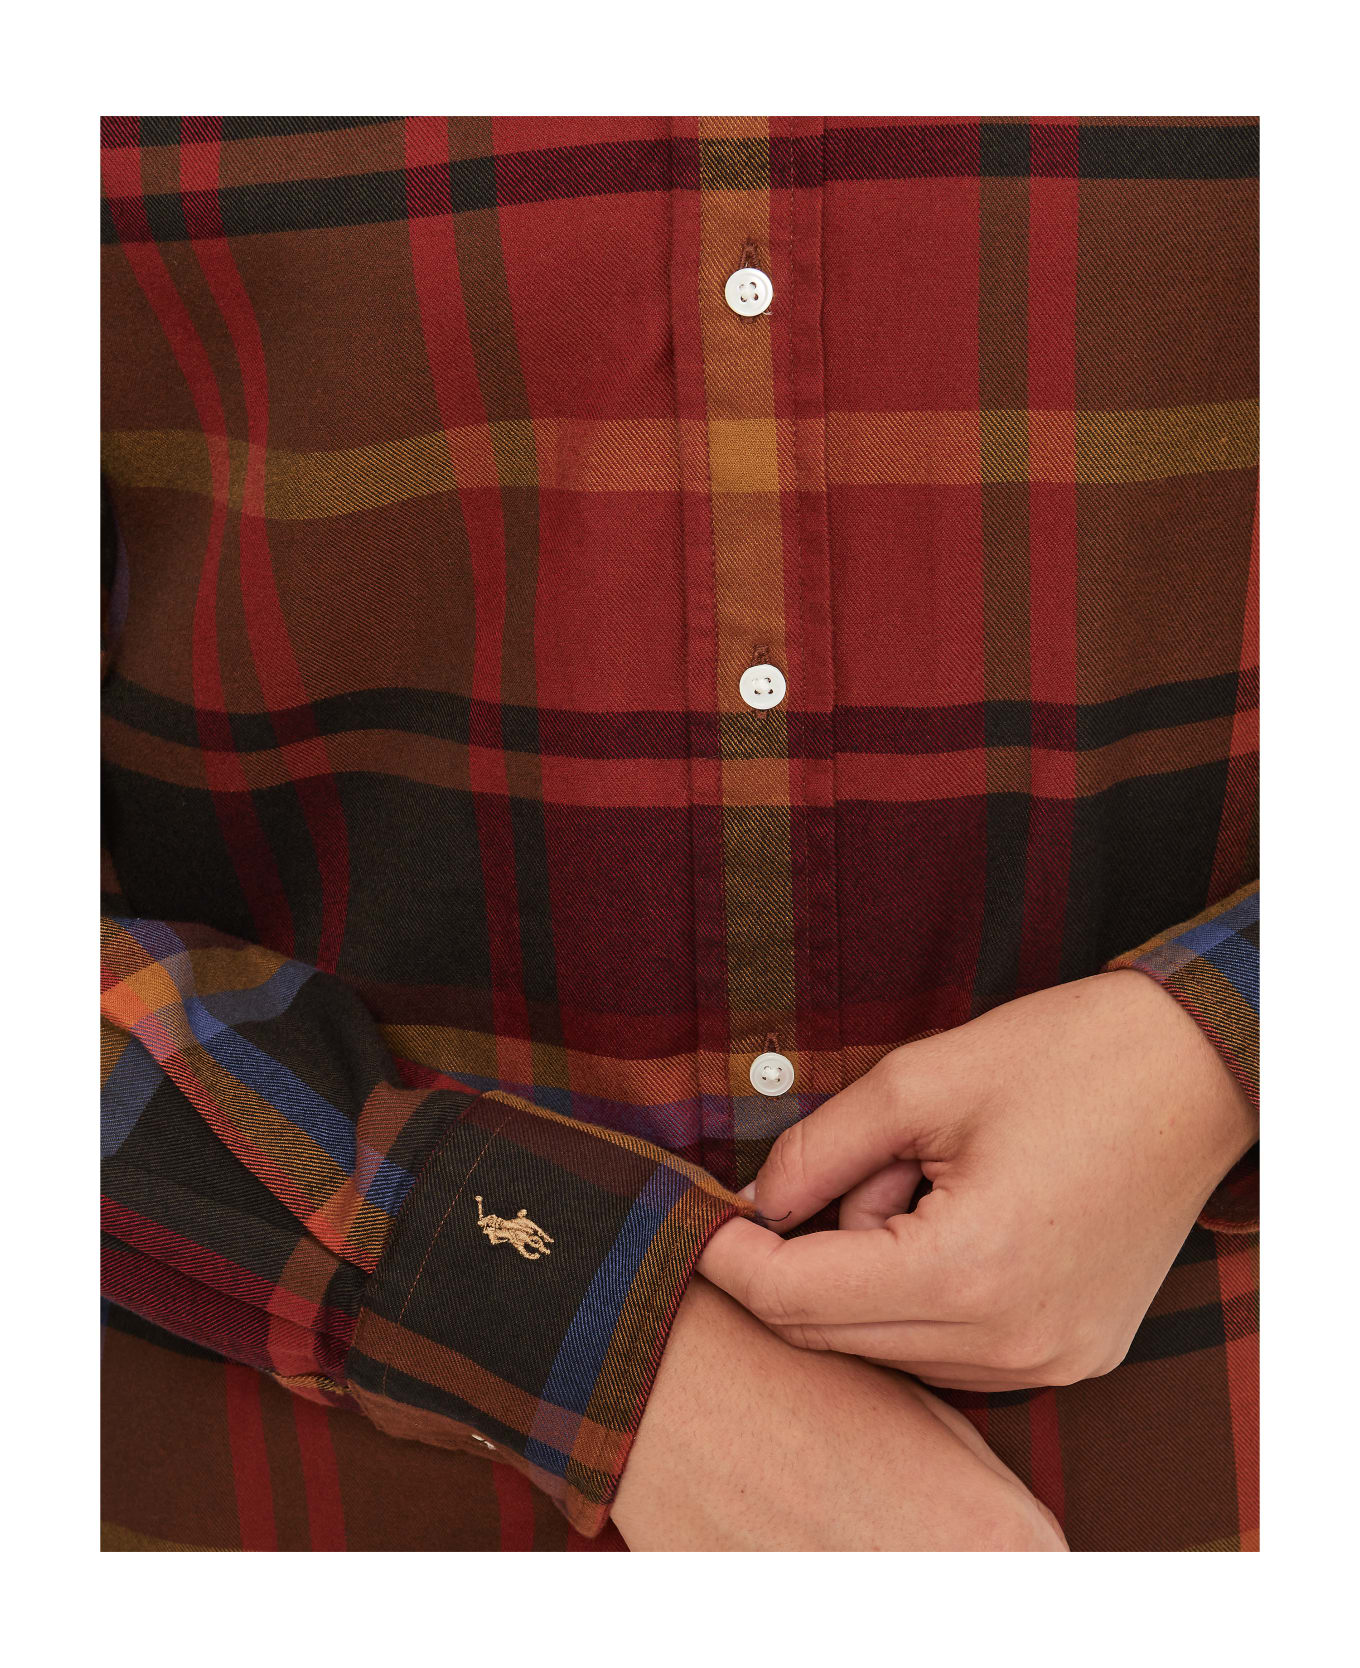 Ralph Lauren Long Sleeve Button Front Shirt - Red Multi Fall Plaid